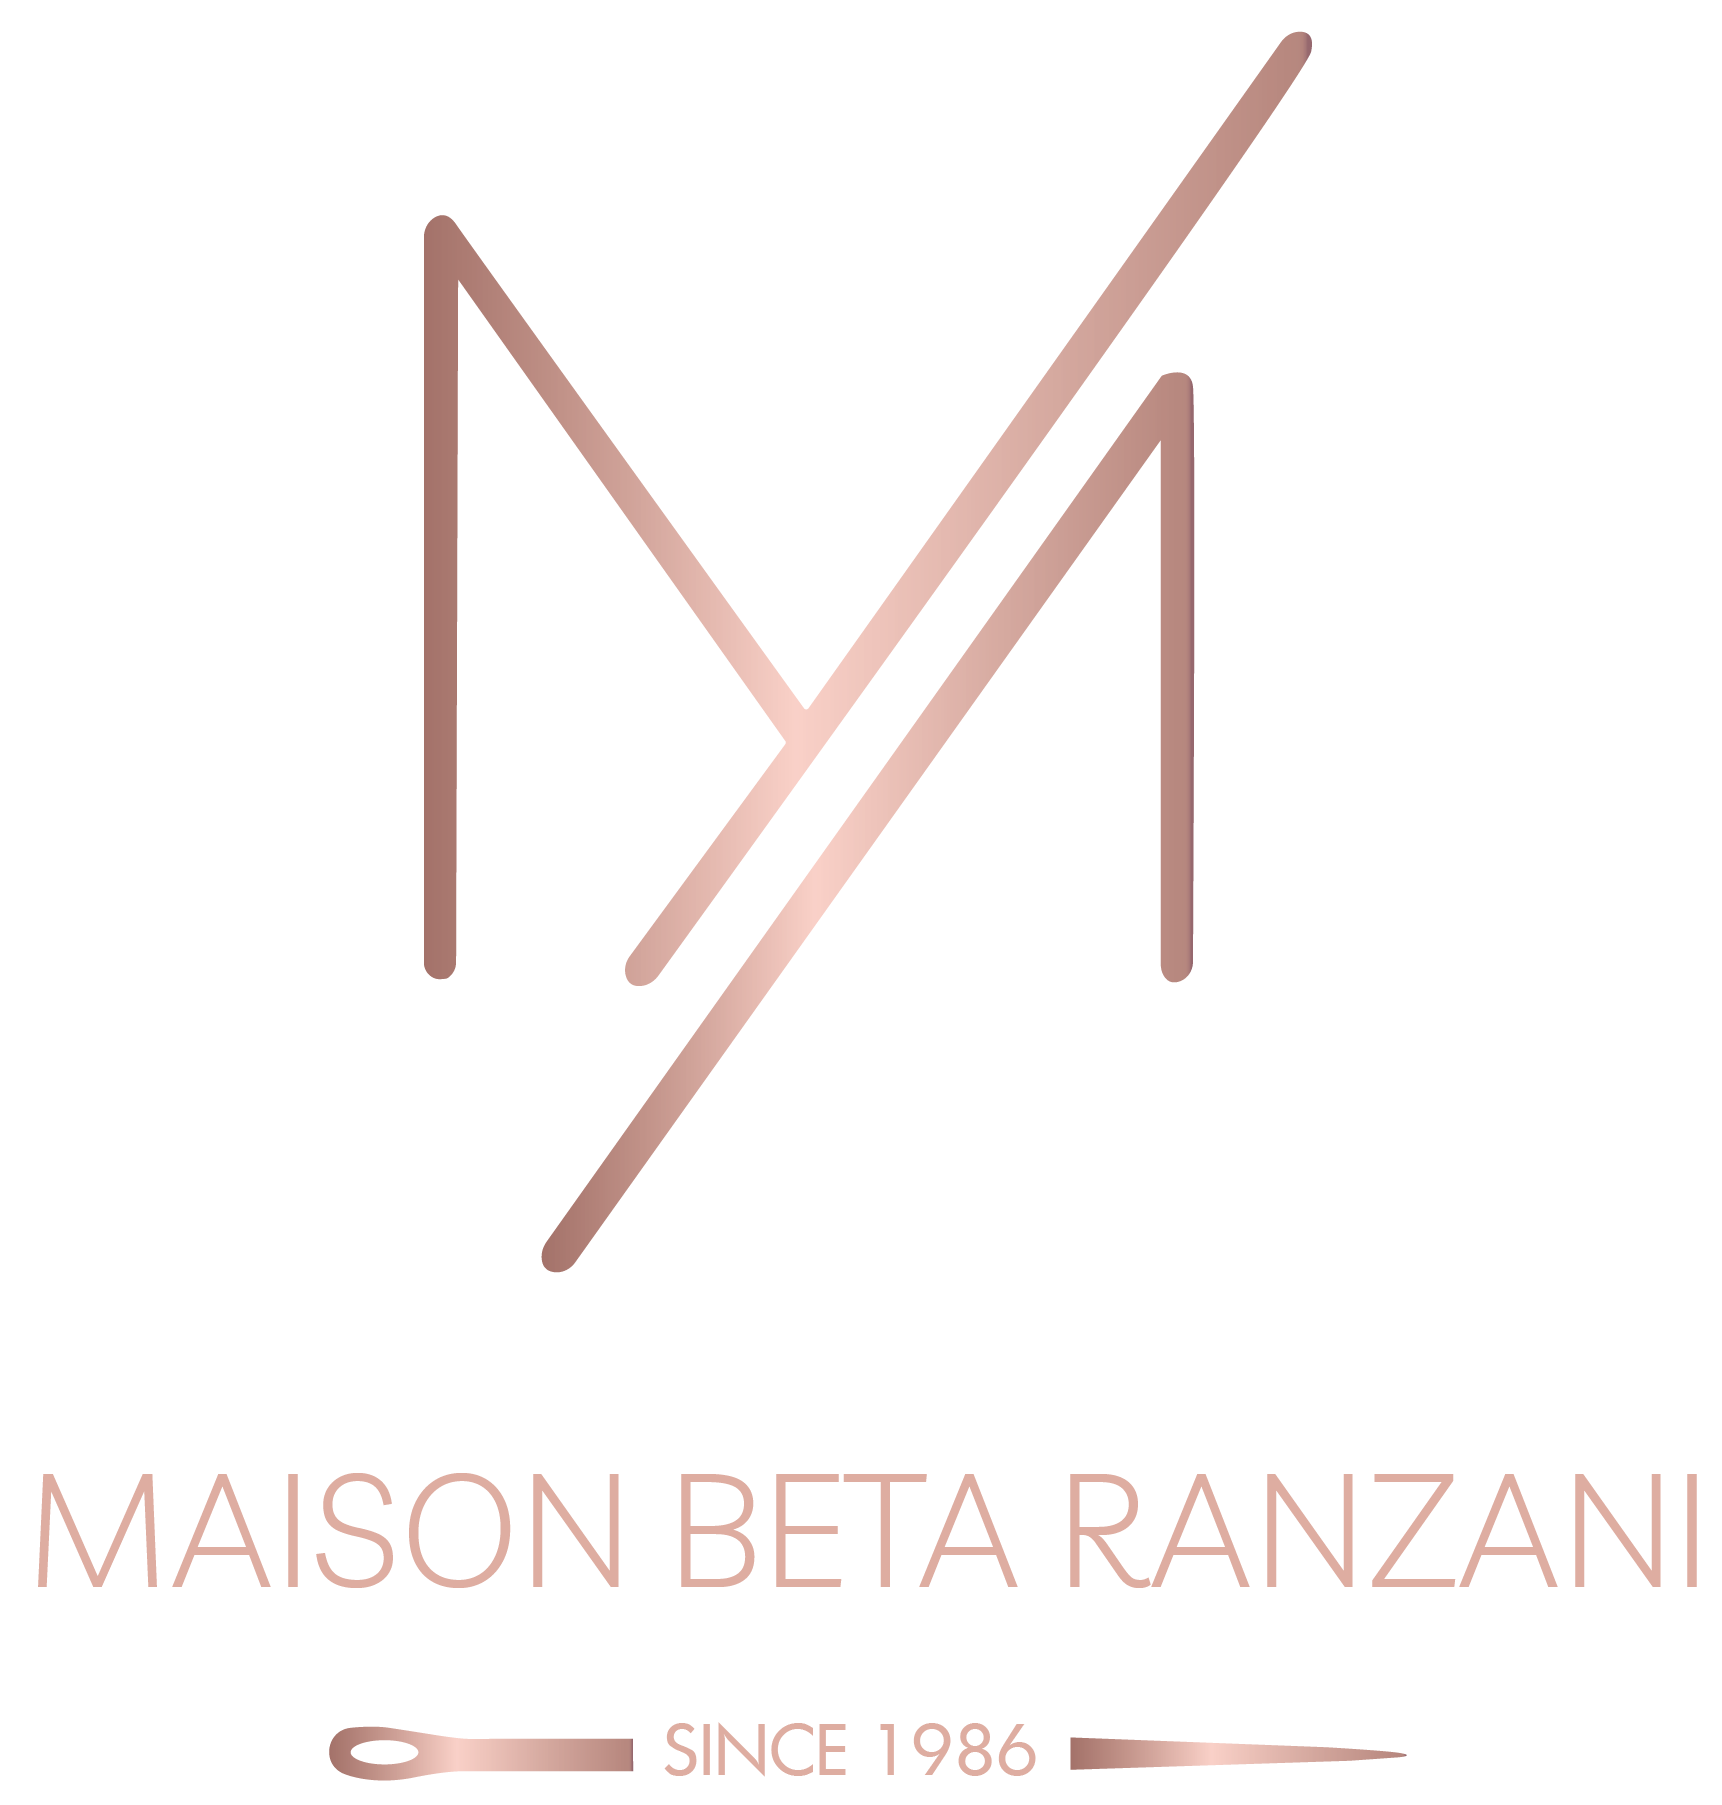 Beta Ranzani